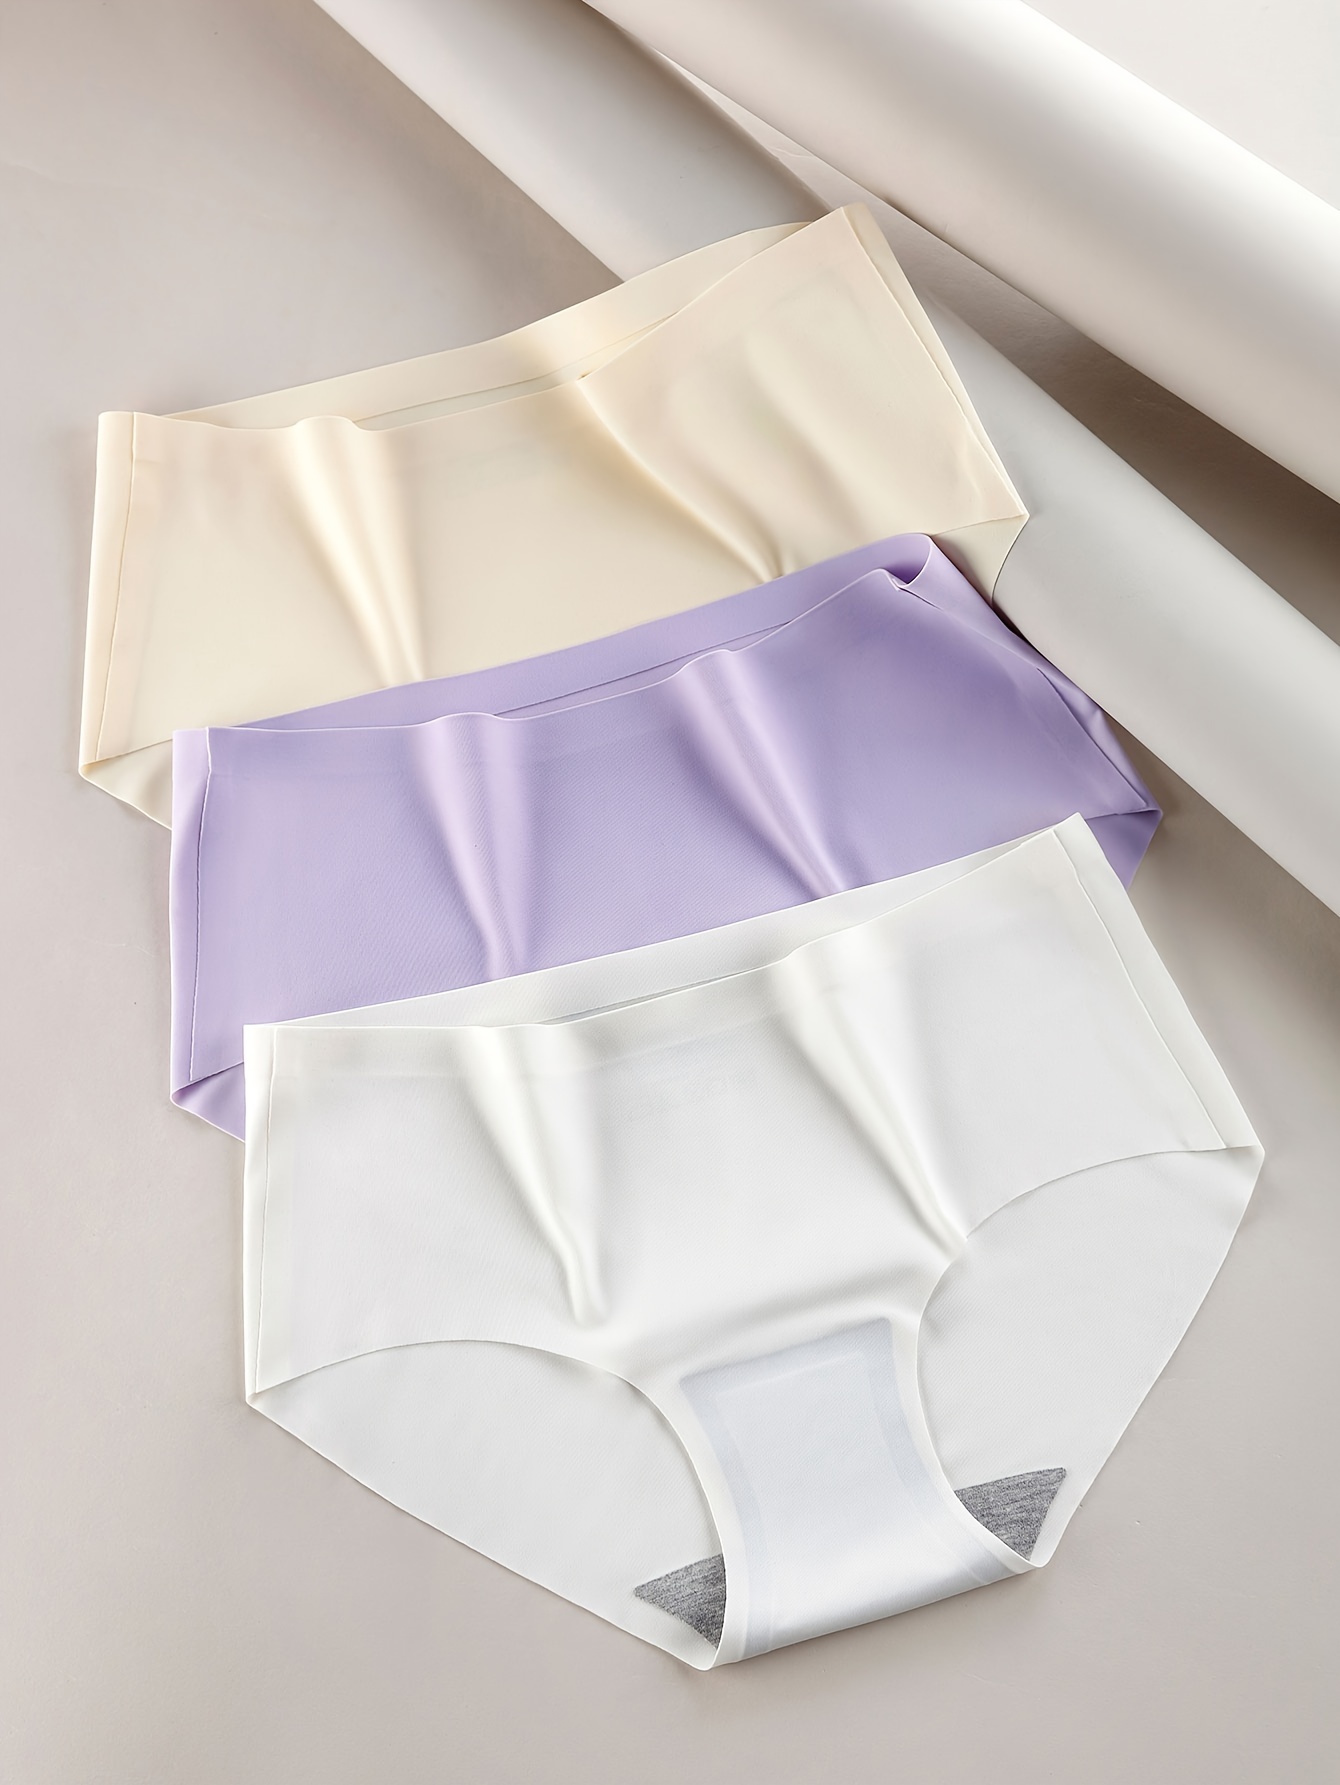 ZOELNIC 5Pcs Women's Solid Color High Waist Cotton Panties Briefs